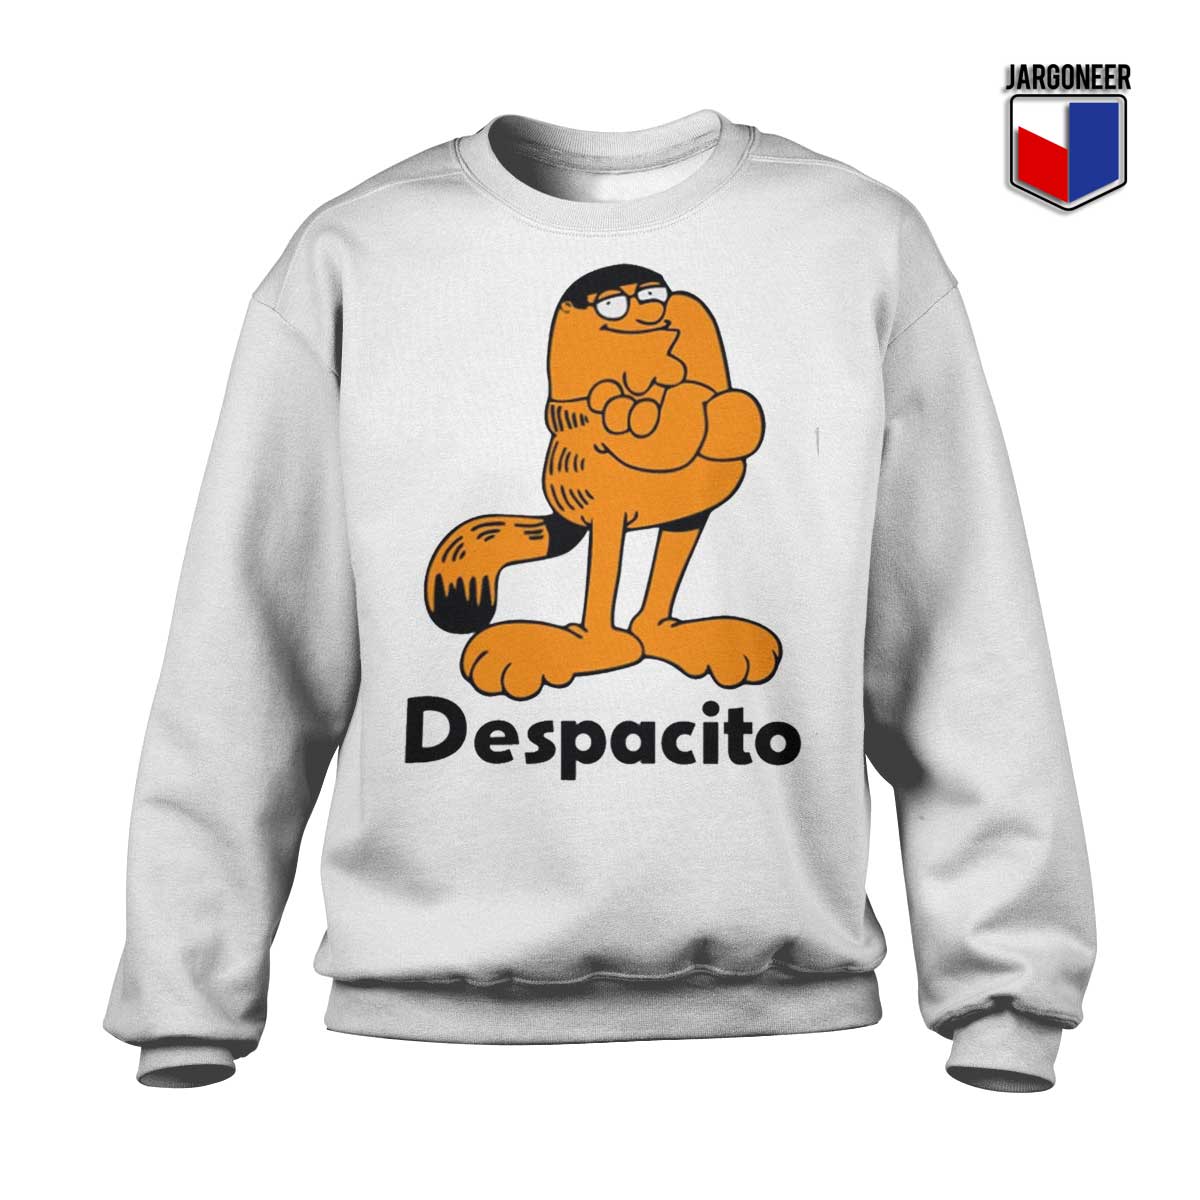 Garfield Despacito Sweatshirt - Shop Unique Graphic Cool Shirt Designs